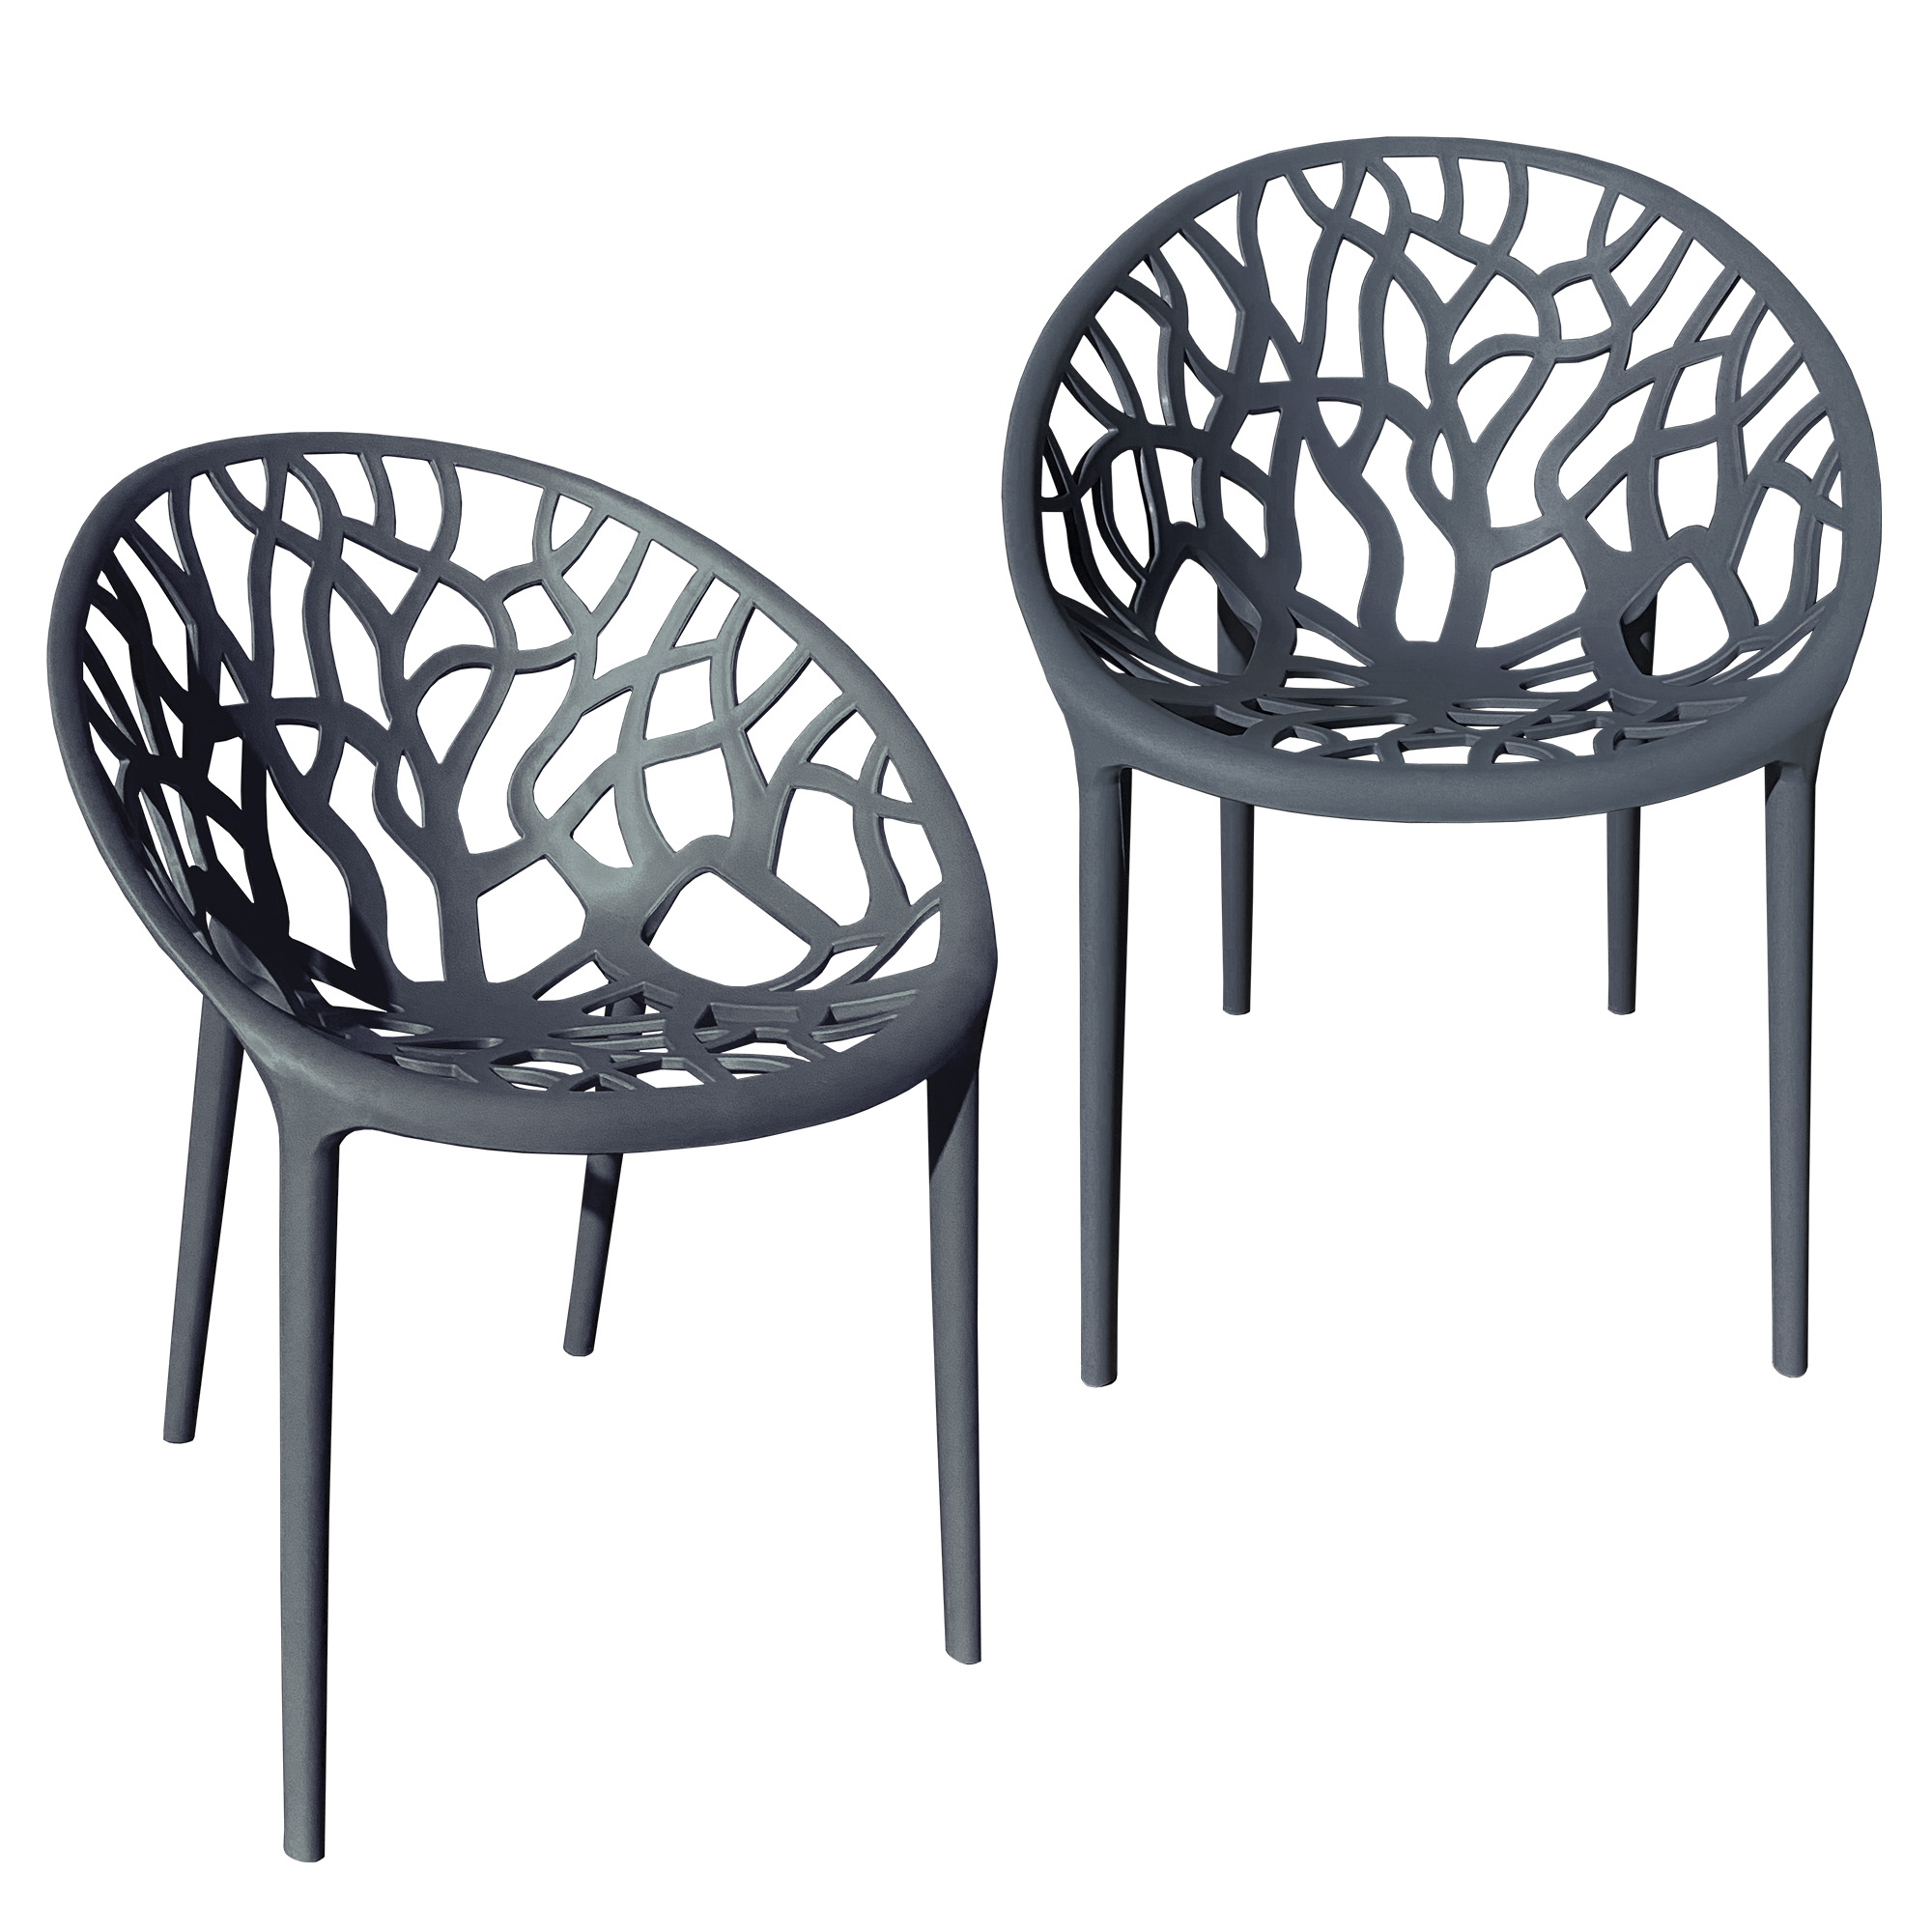 Bistrostuhl Stuhl Farbe:Dunkelgrau, Kunststoff Stapelstuhl Menge:2 Stapelbar, Gartenstuhl Küchenstuhl